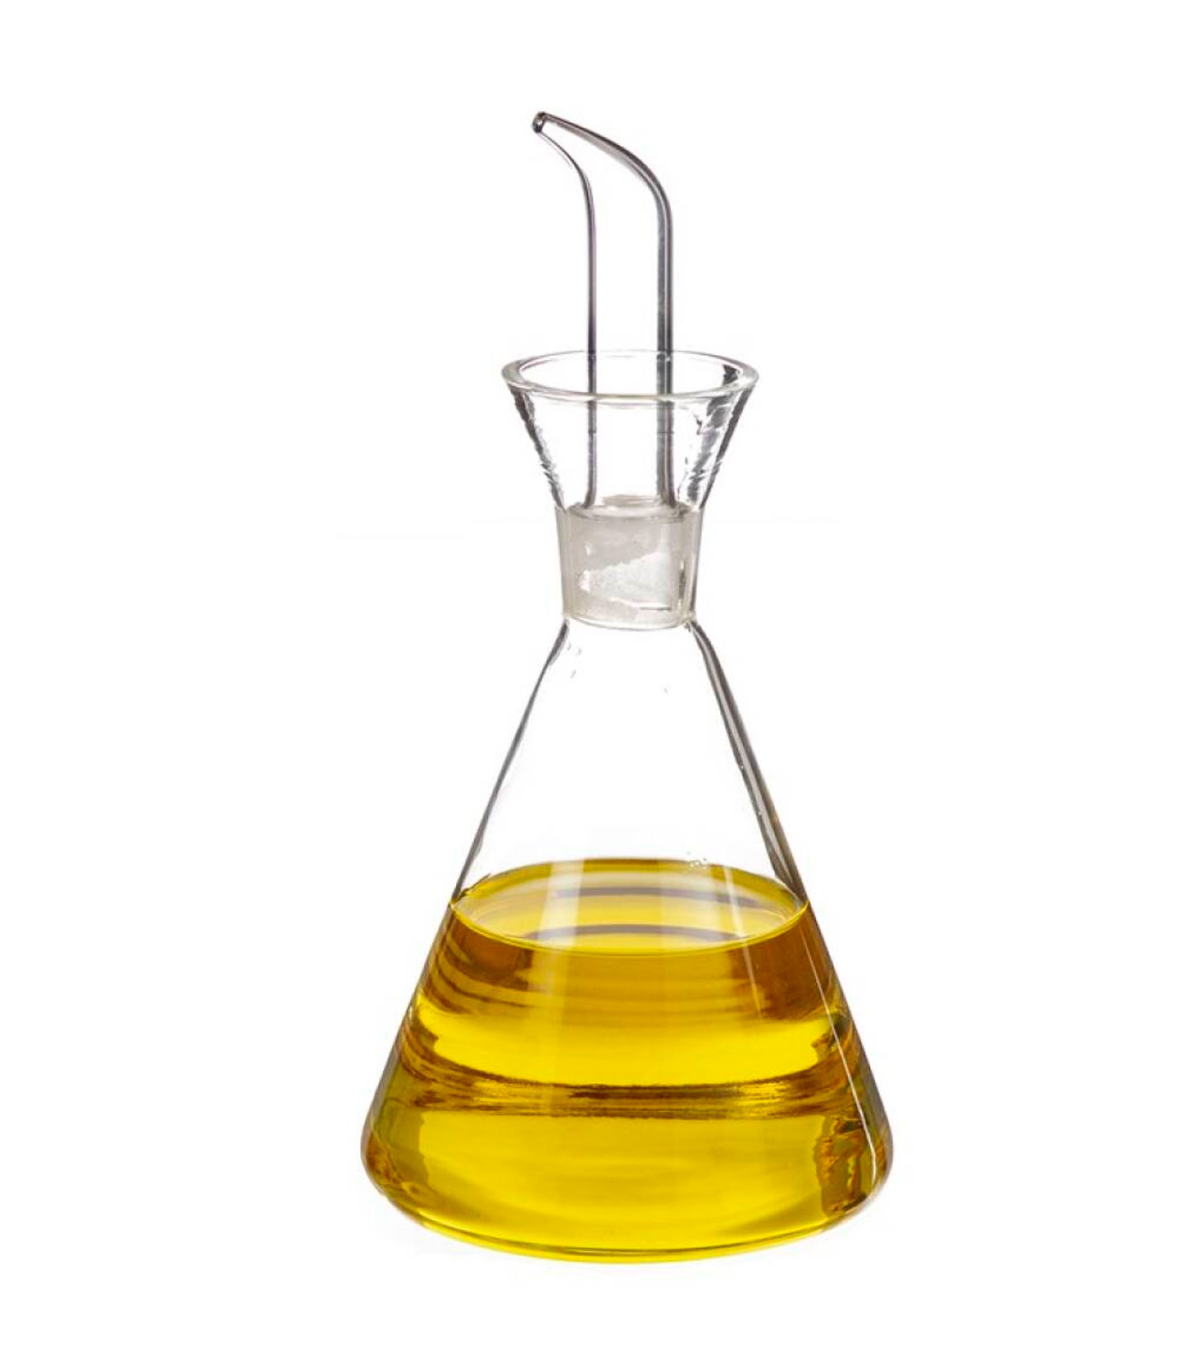 Tradineur - Aceitera de cristal a rayas con pulverizador de spray,  dispensador rellenable para aceite, vinagre, aliñar ensaladas